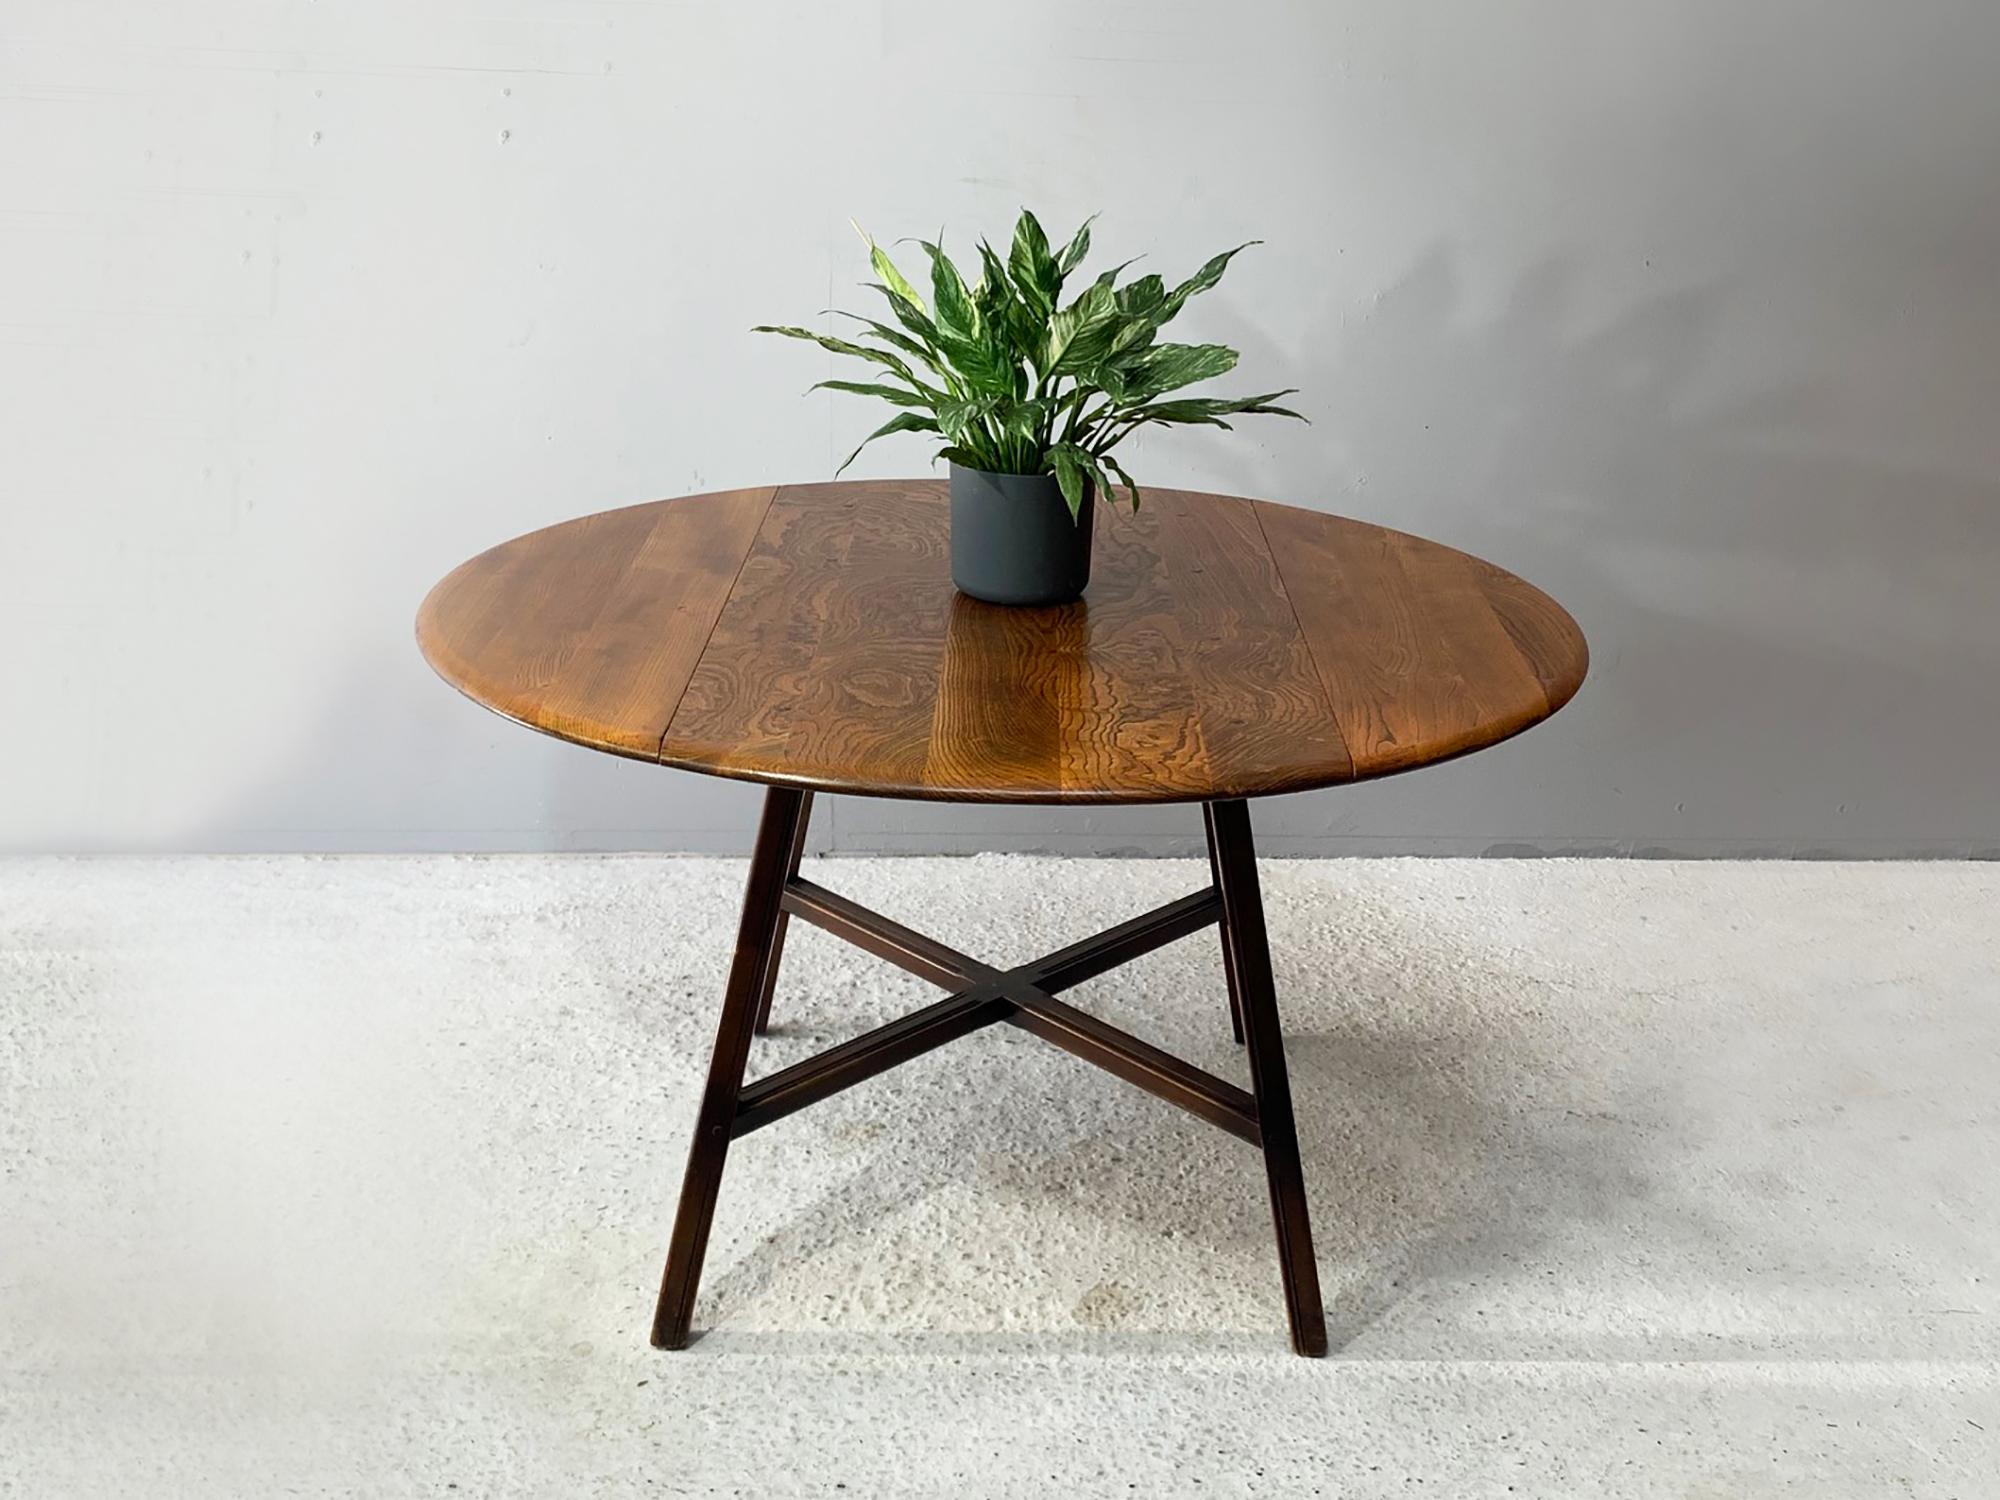 Conçue par Lucian R. Coloni, la table Ercol Old Colonial est un modèle plus ancien et plus rare que les tables Ercol plus récentes. Produit dans les années 1960, il porte l'